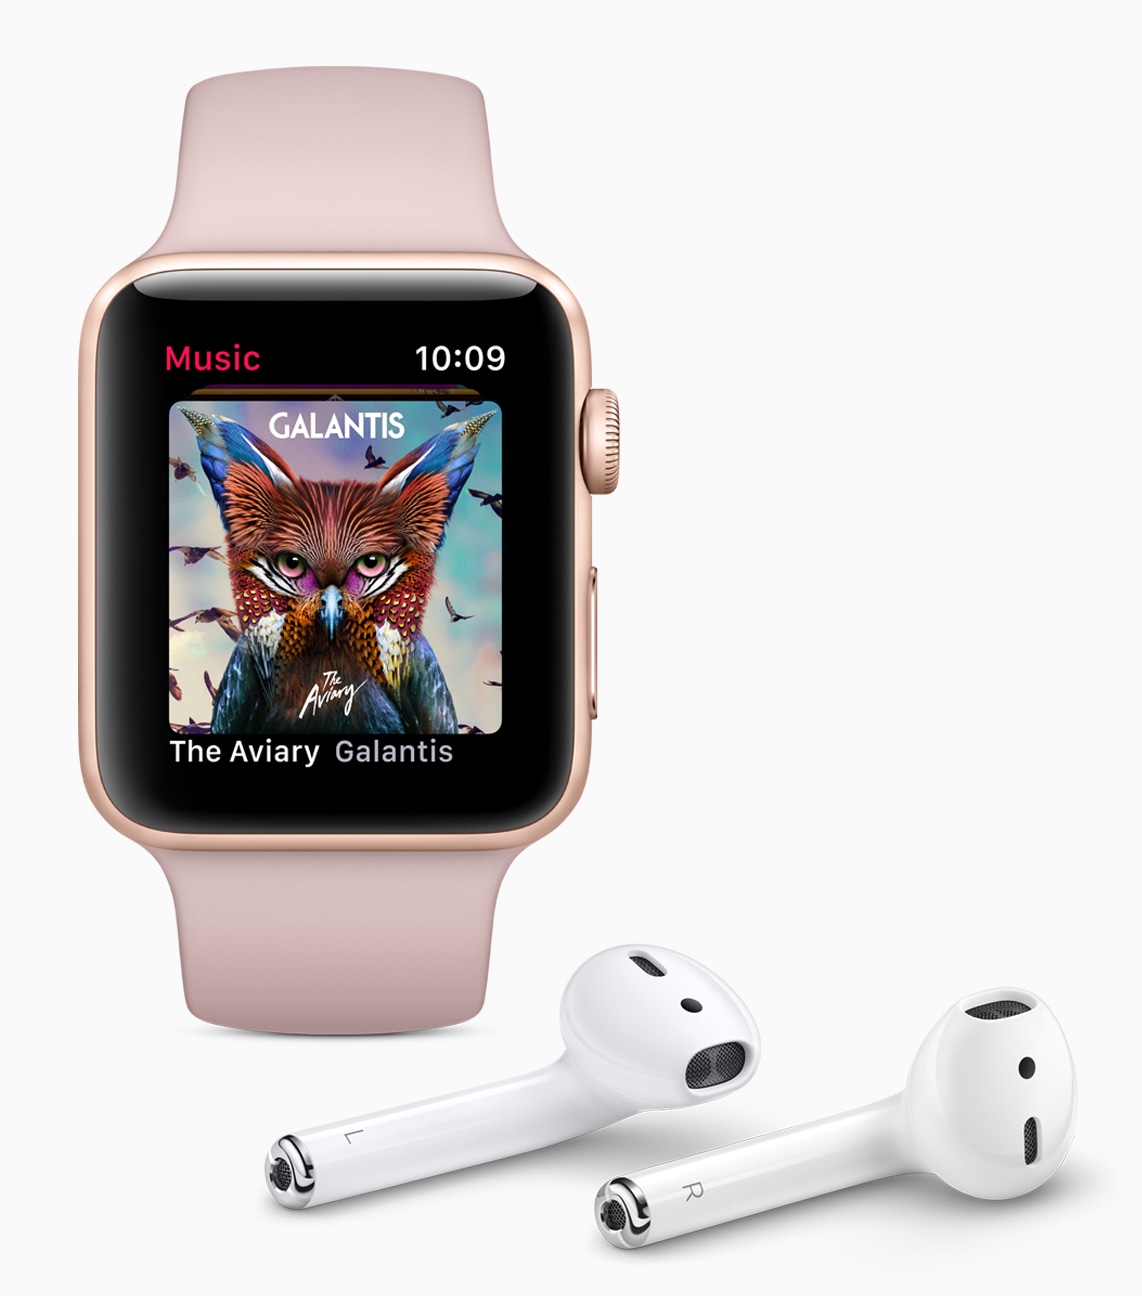 Novo app Música do watchOS 4 no Apple Watch Series 3 com AirPods do lado